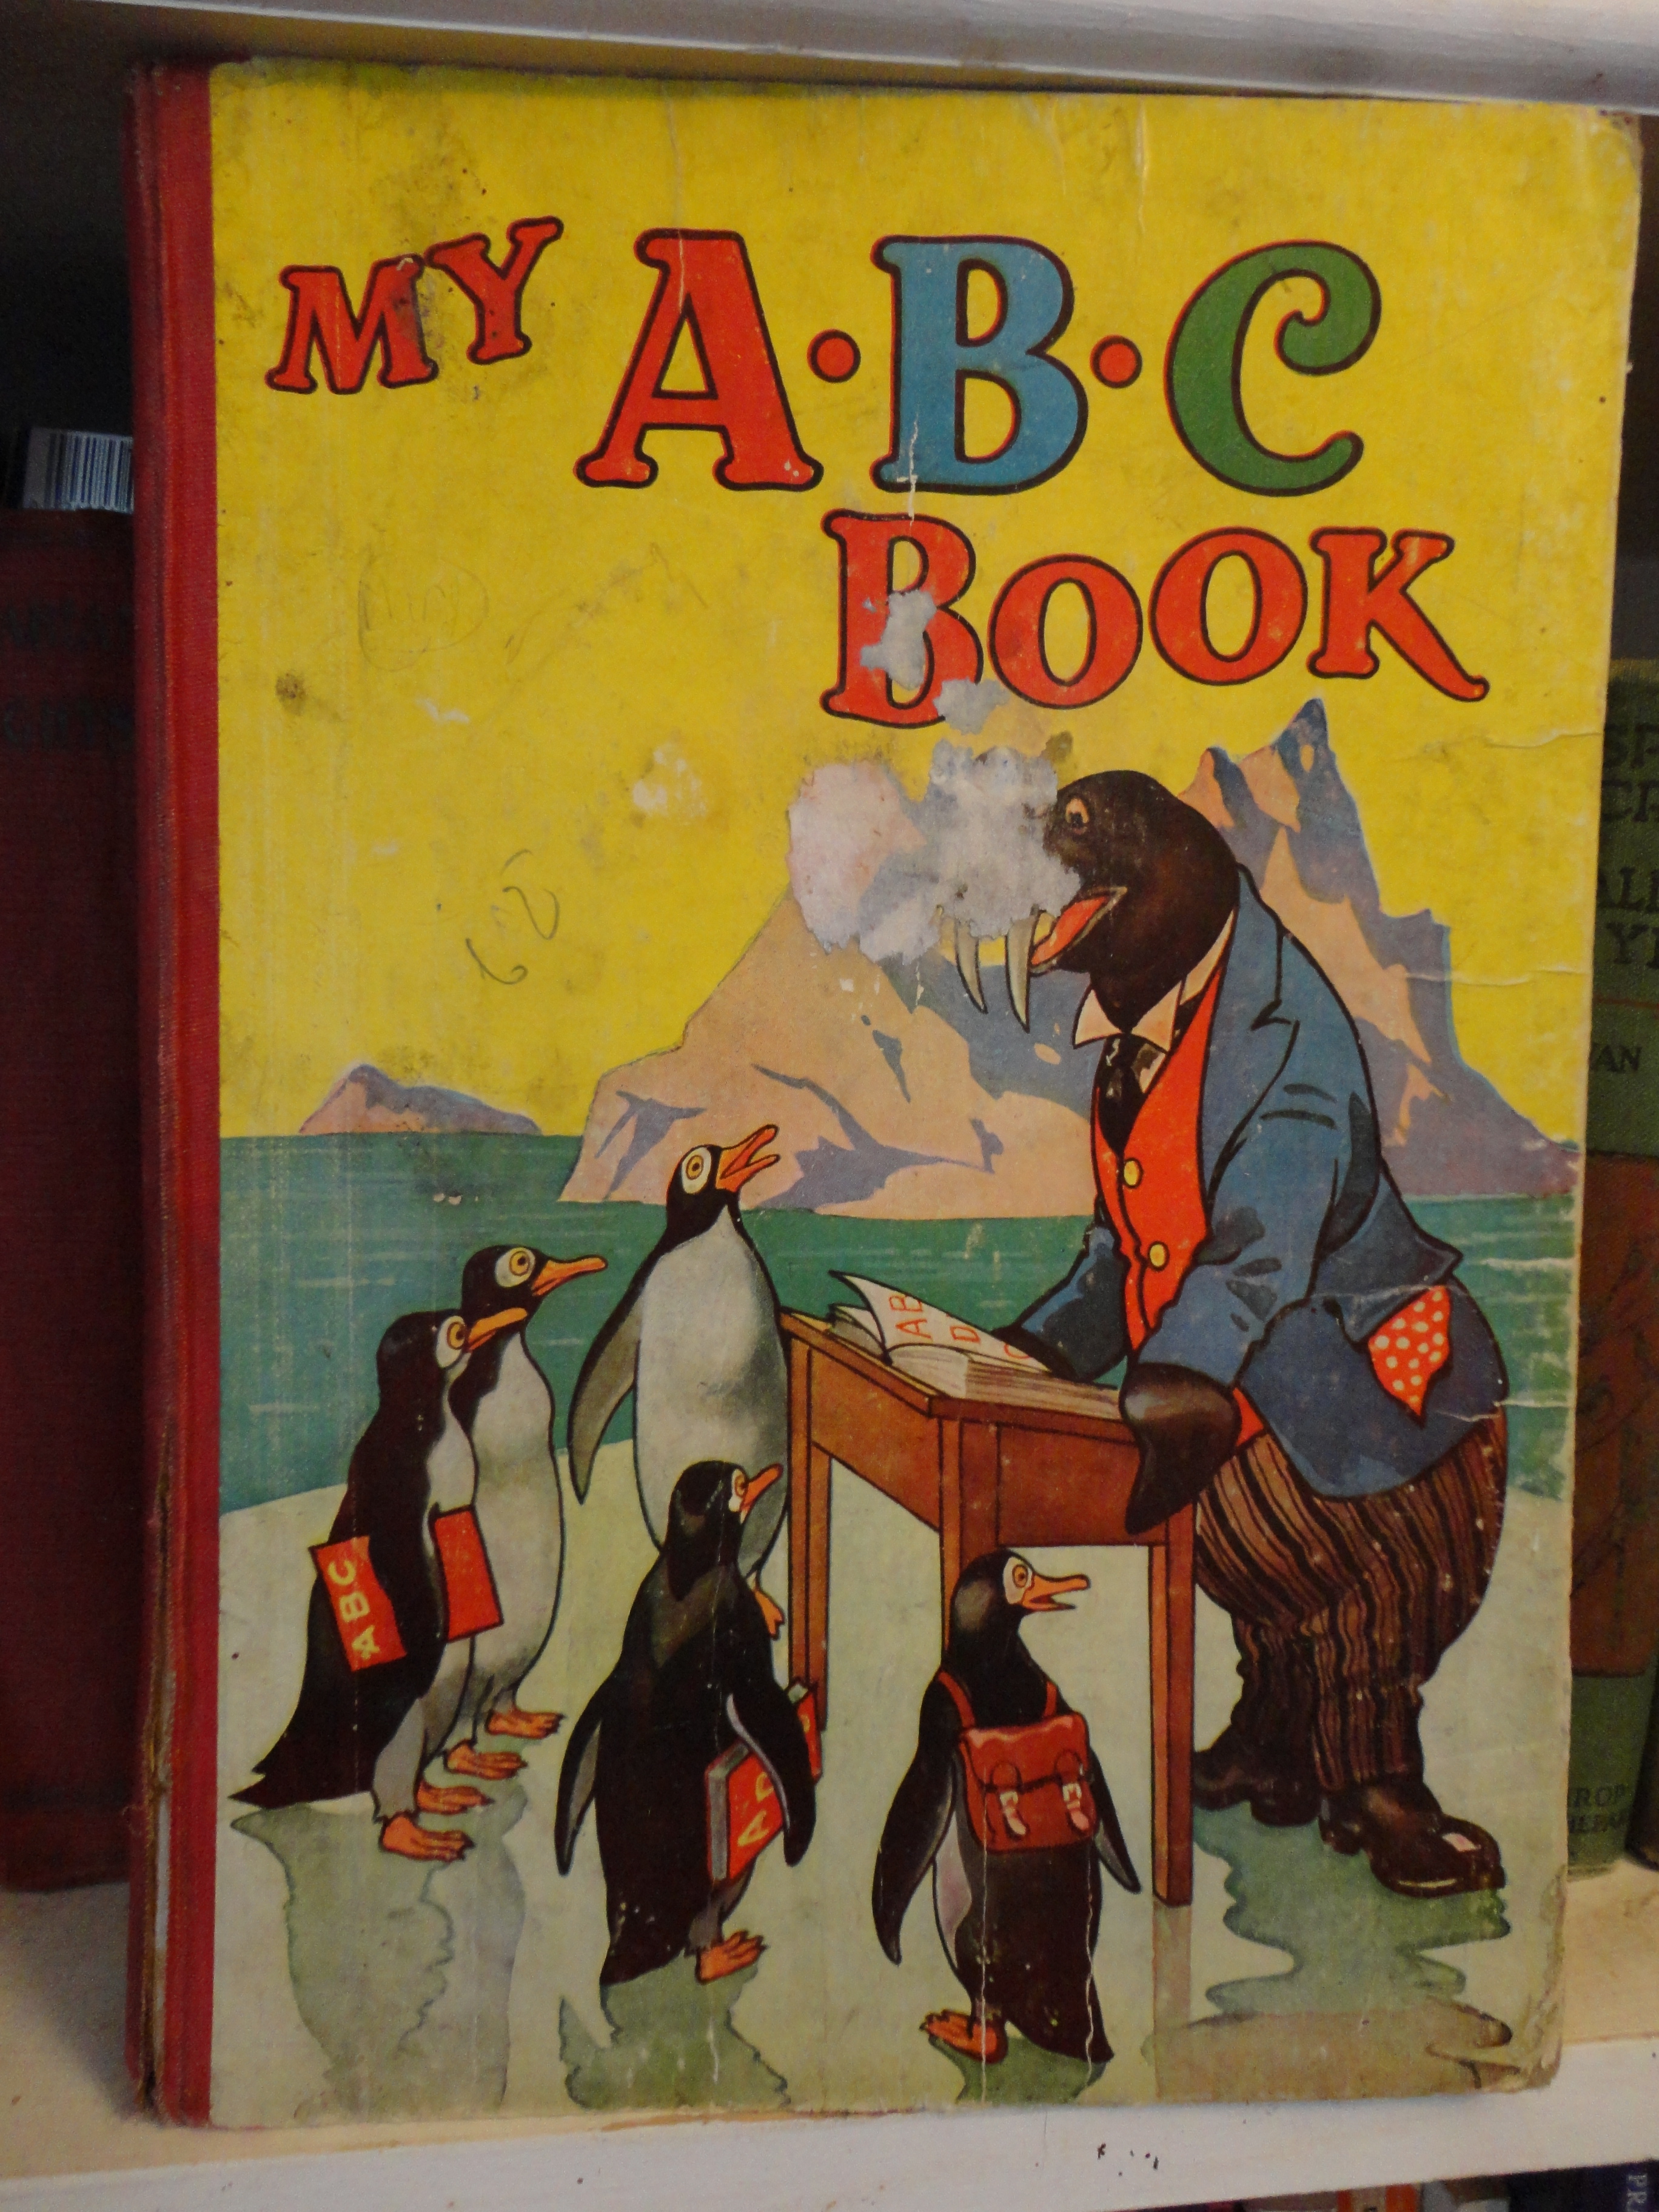 Antique book of ABC's